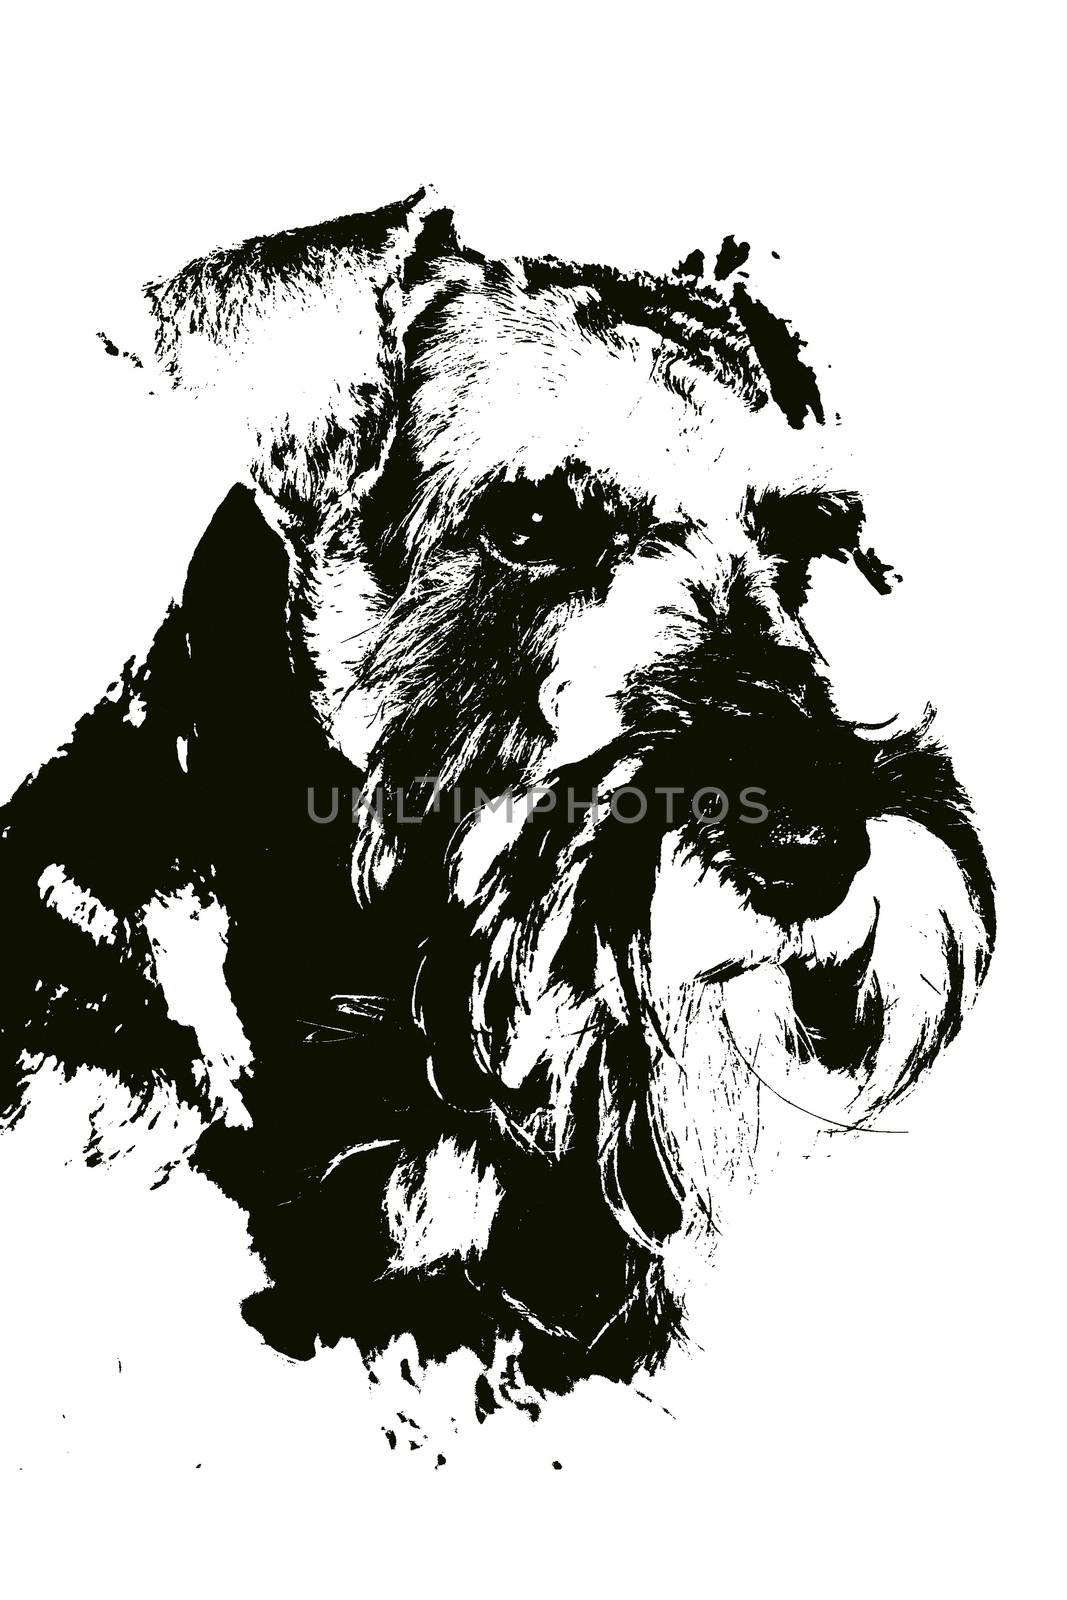 Illustration of a dog by CelsoDiniz